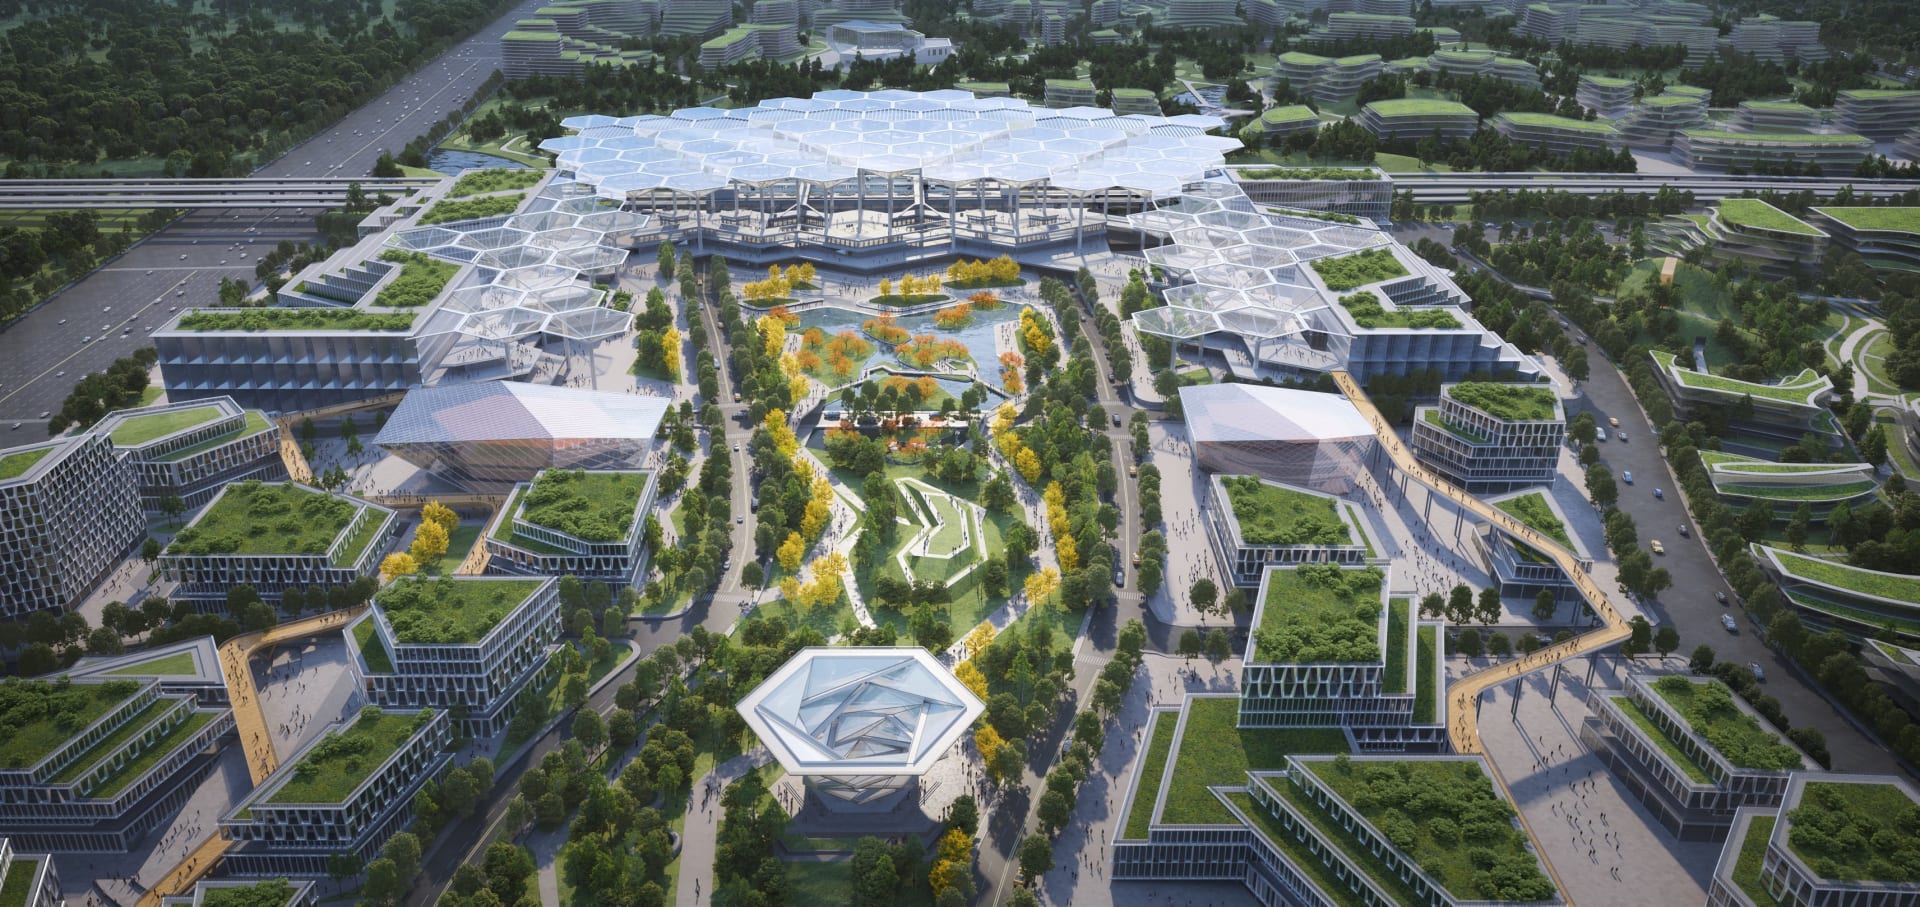 بمبانٍ تشبه حقول الأرز..كيف ستبدو "مدينة المستقبل" الجديدة في الصين؟